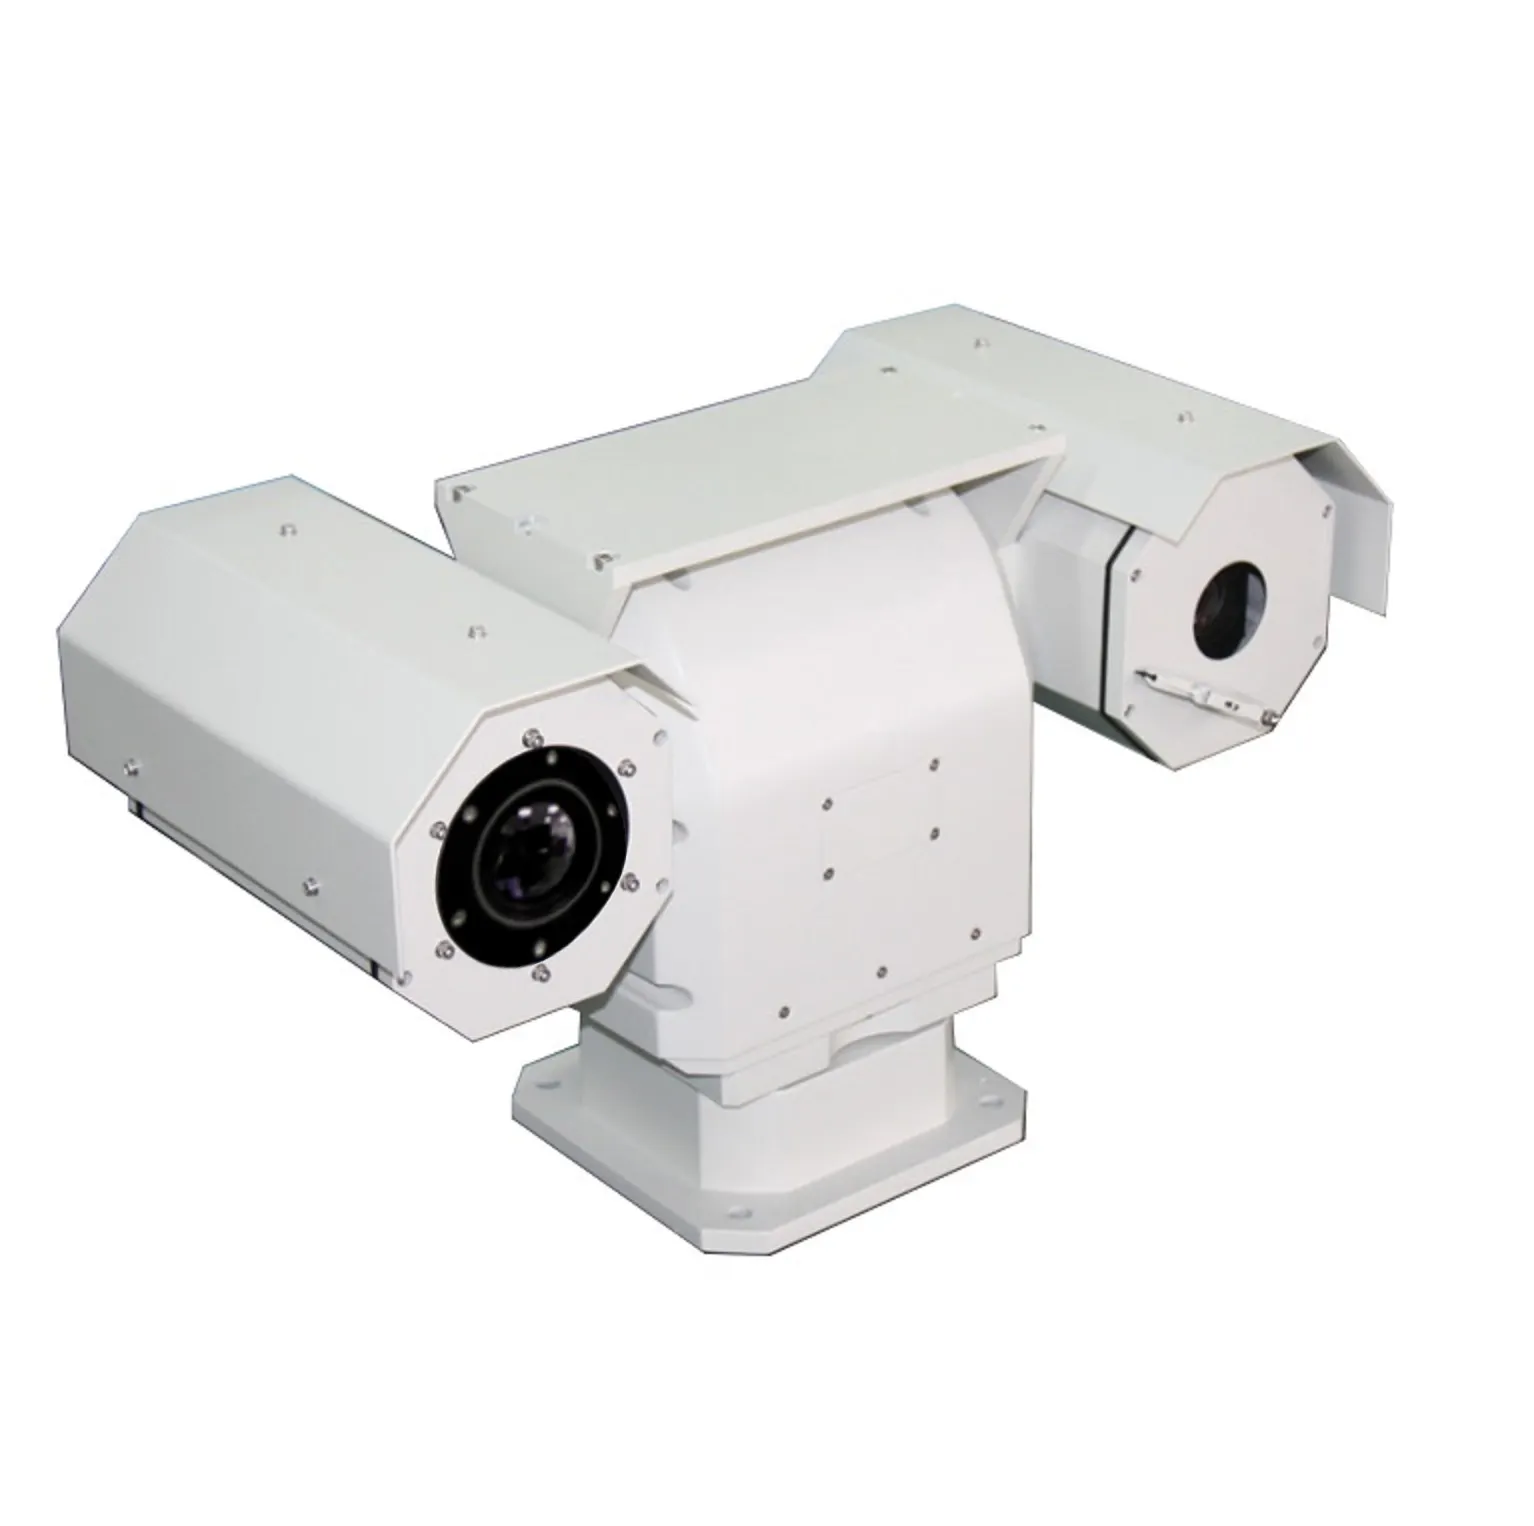 Caméra de surveillance à imagerie thermique pour la défense des frontières extérieur 2-6km longue distance Fl 100mm F1.0 Lwir objectif motorisé voiture Ptz